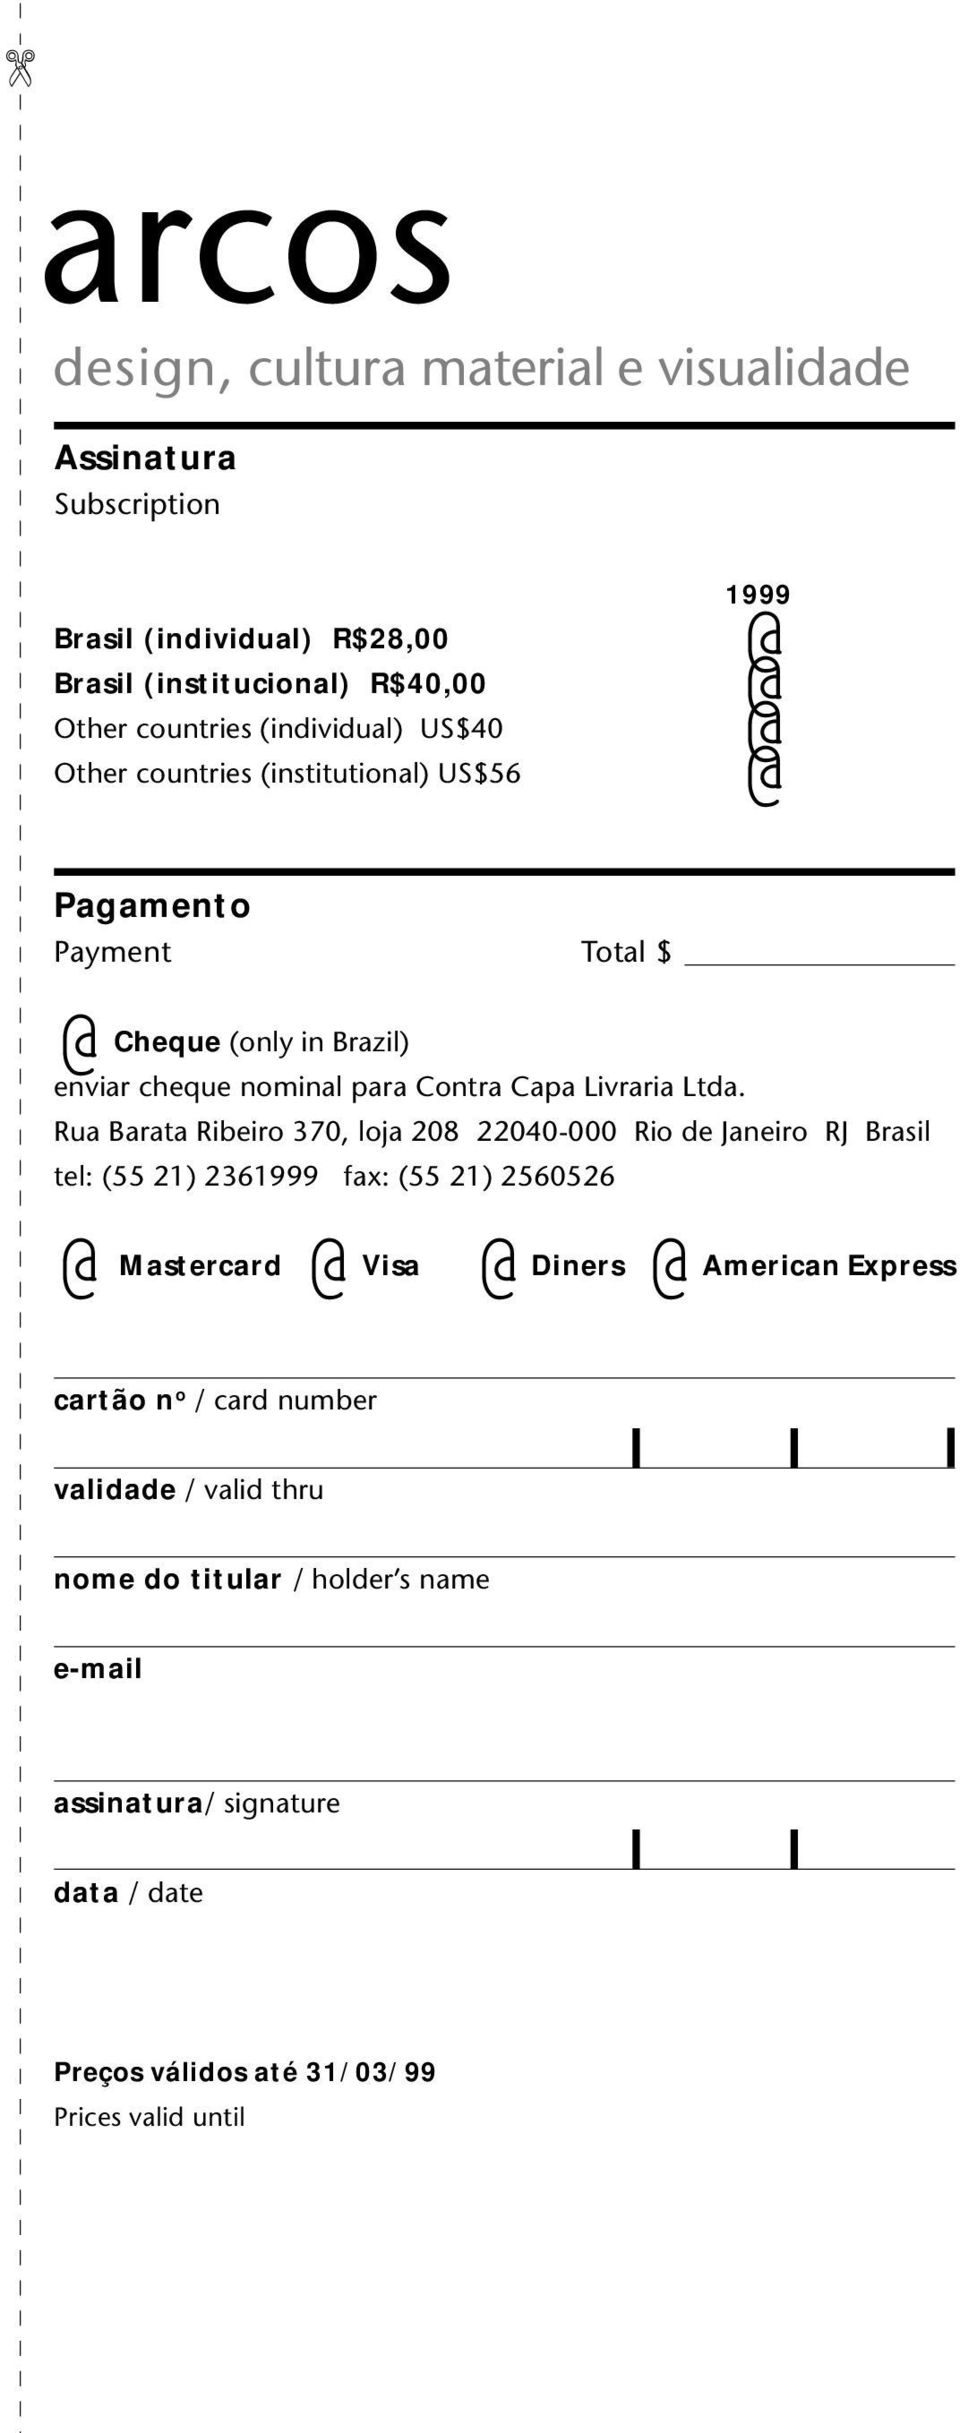 Rua Barata Ribeiro 370, loja 208 22040-000 Rio de Janeiro RJ Brasil tel: (55 21) 2361999 fax: (55 21) 2560526 Mastercard Visa Diners American Express cartão n o / card